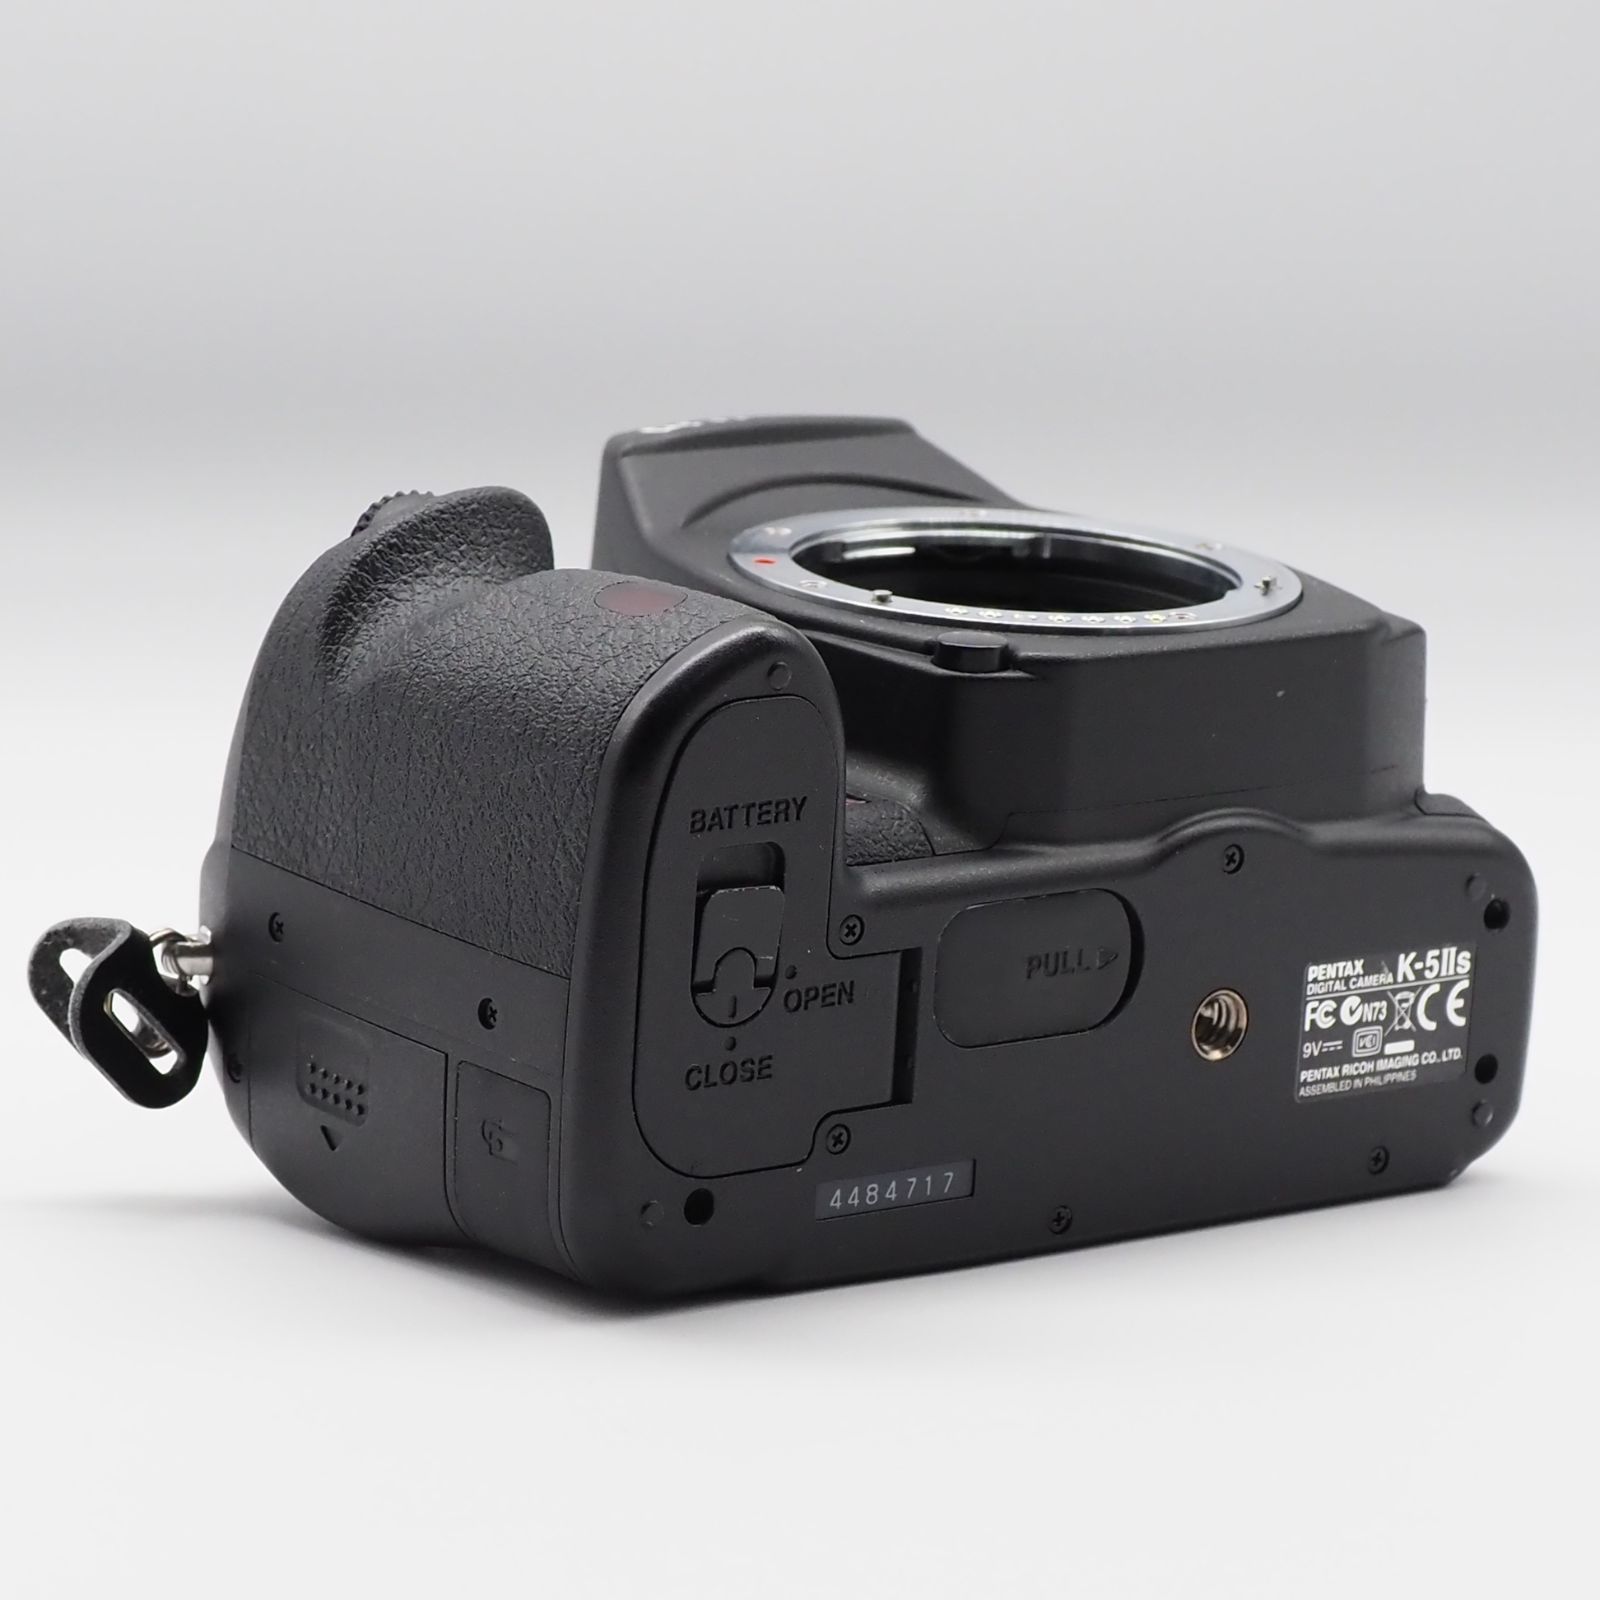 特価ブランド PENTAX デジタル一眼レフカメラ K-5IIs ボディ K